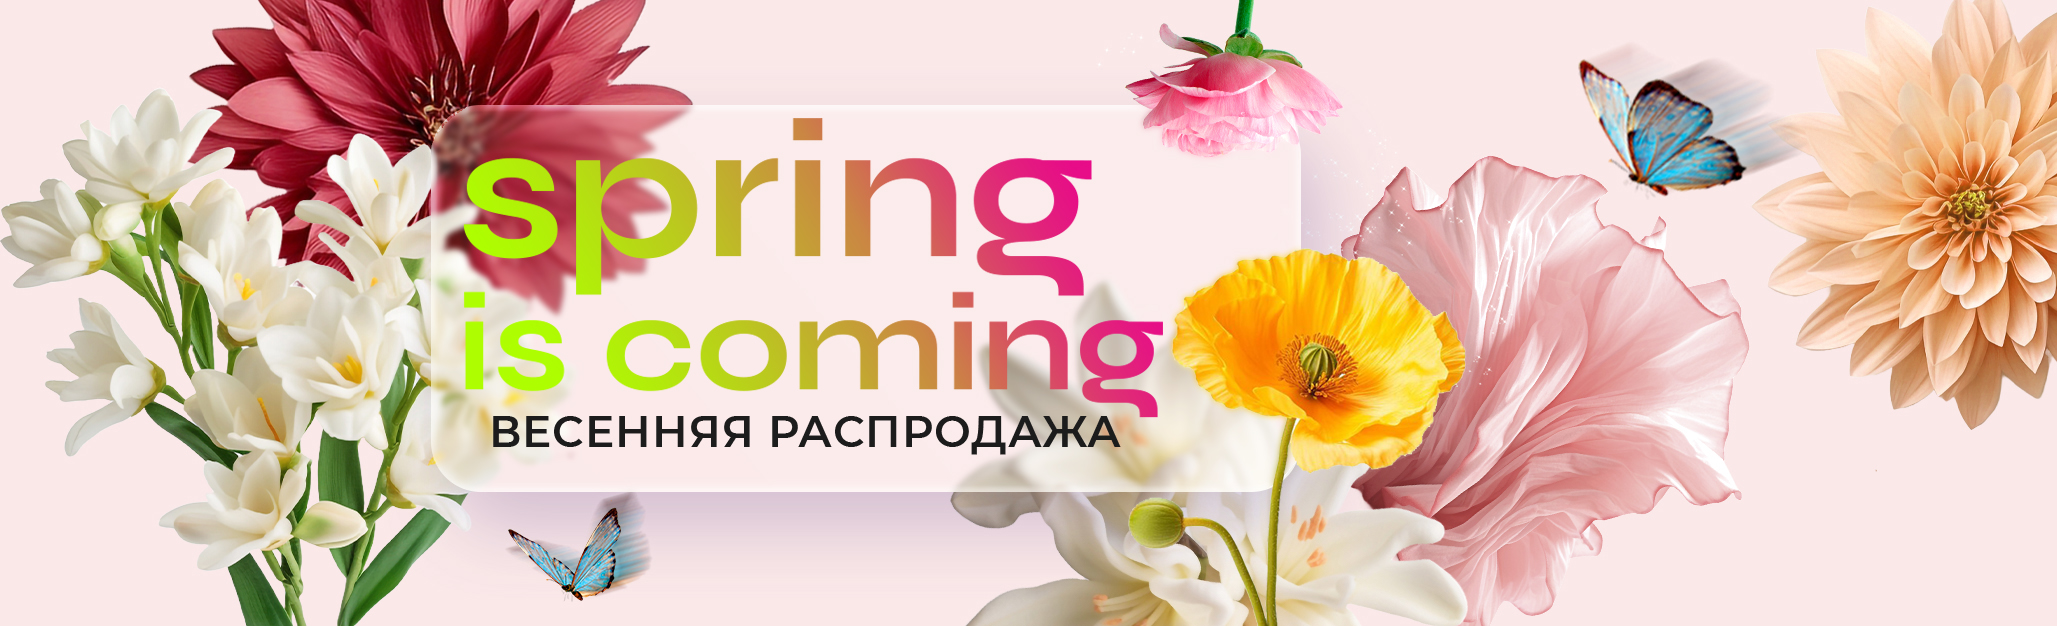 Отметьте начало весны и праздник 8 Марта вместе с нами! Мы рады предложить вам уникальную распродажу, посвященную этим знаменательным событиям. Подарите себе и своим близким радость встречи весны с нашими особенными предложениями. Празднуйте приход весны и Международный женский день с нами - пусть каждый день будет наполнен красотой и вдохновением!